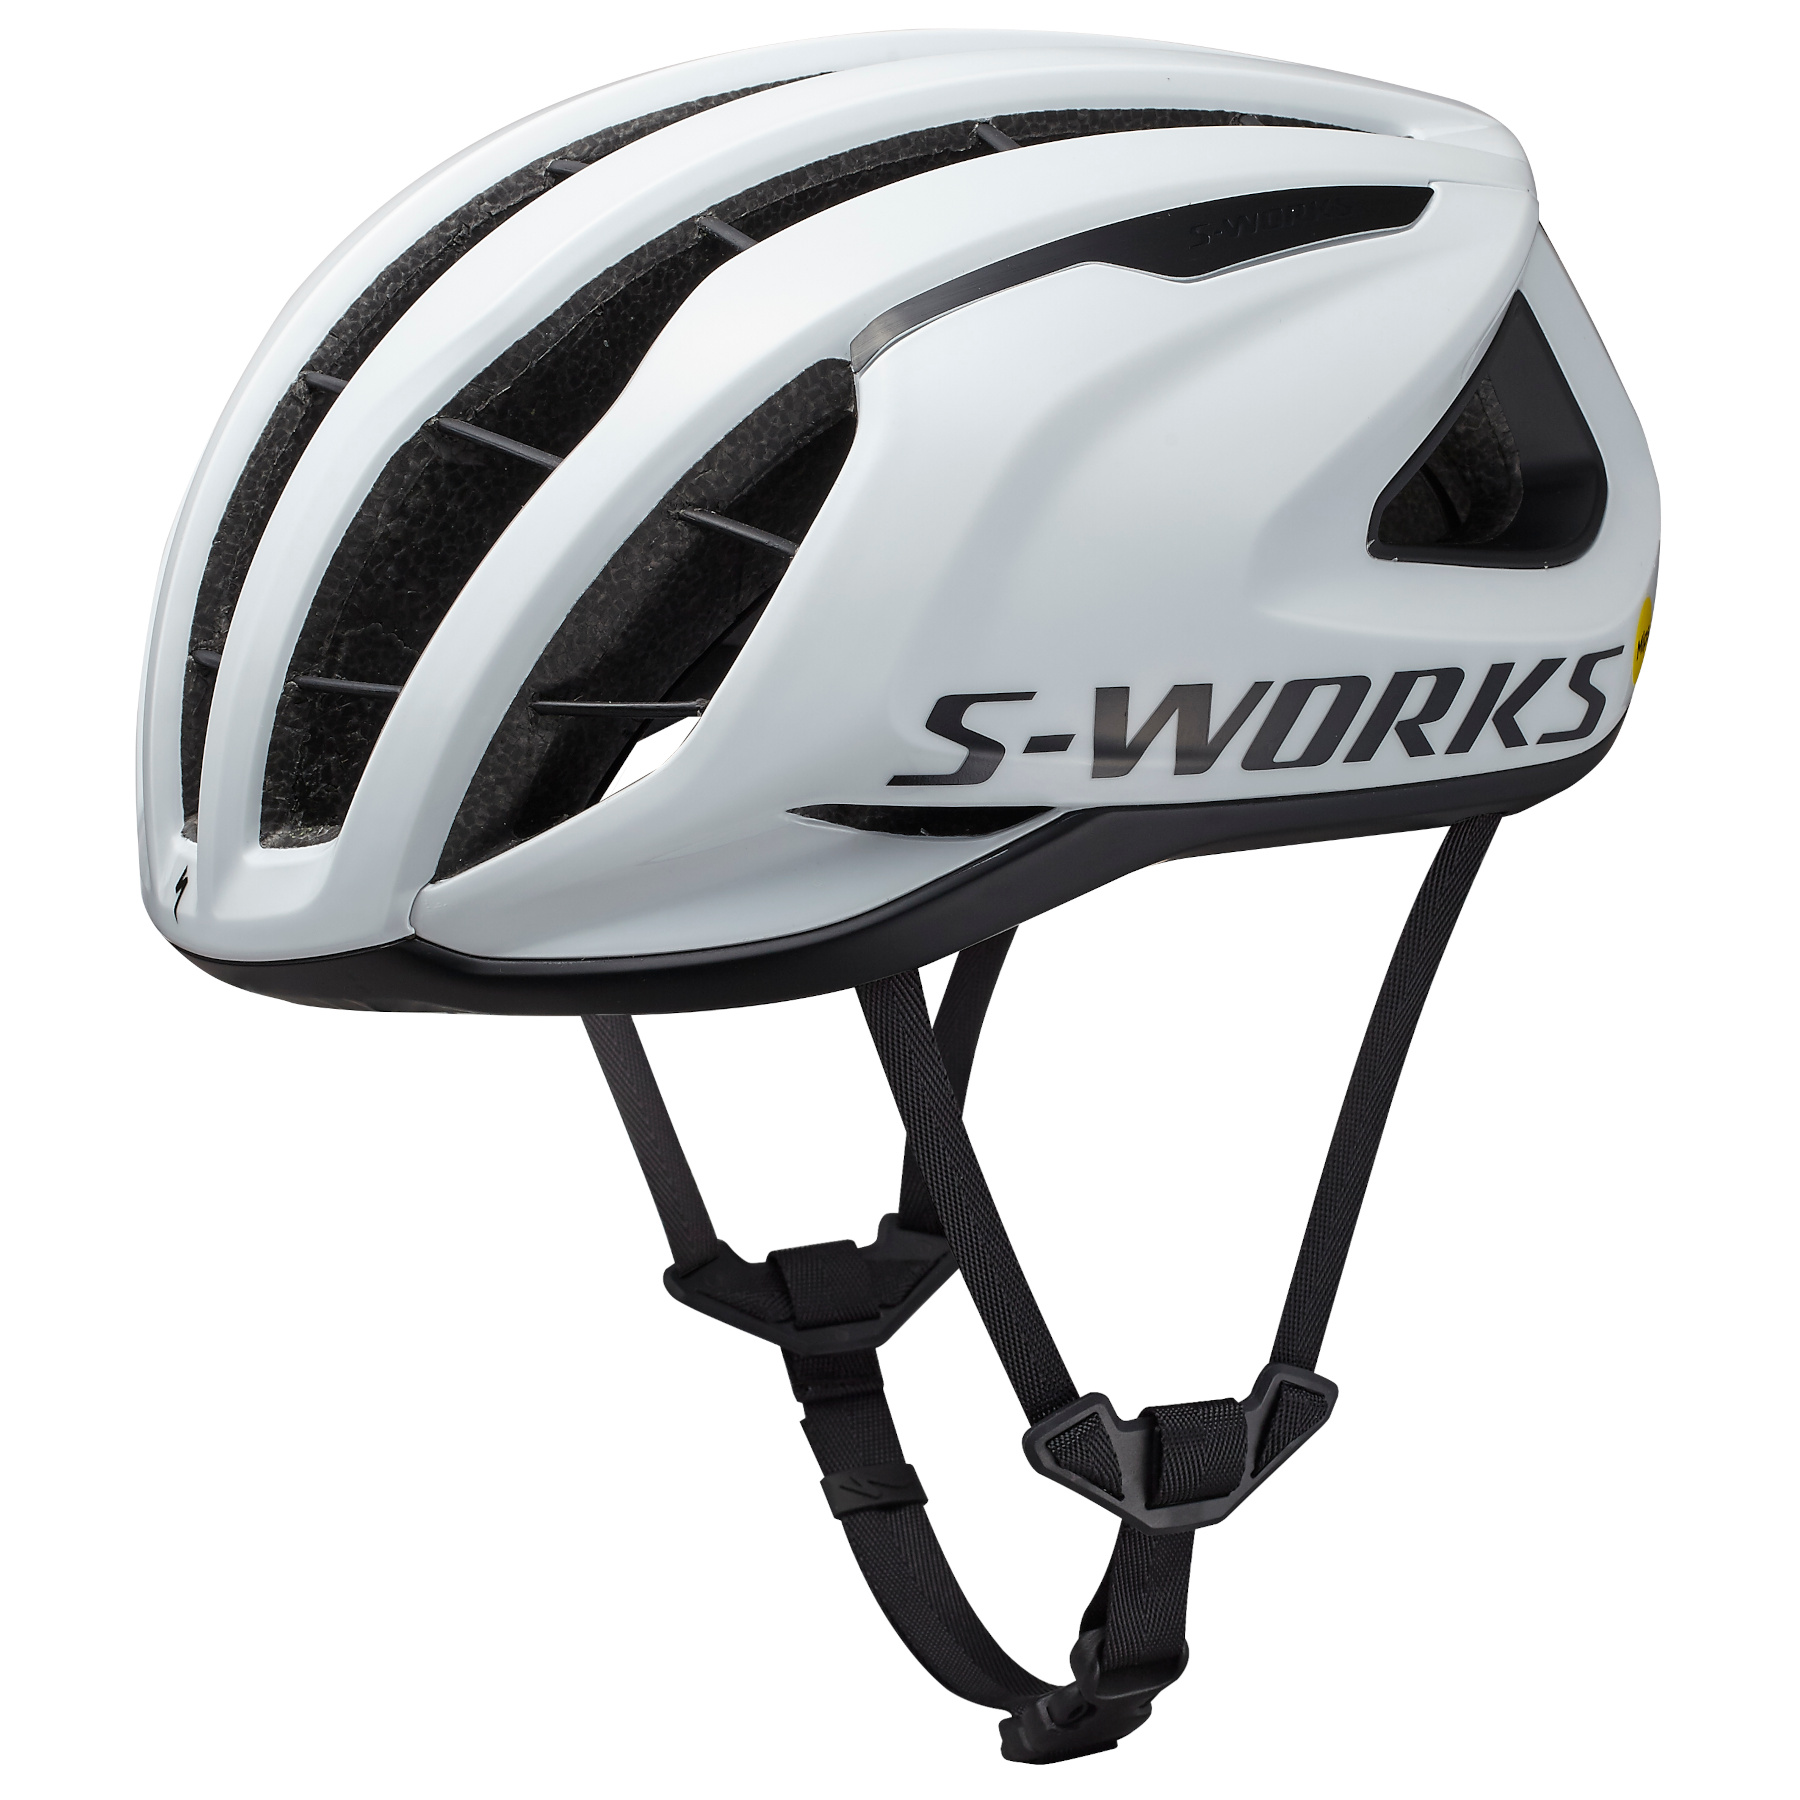 Produktbild von Specialized S-Works Prevail 3 Helm - MIPS Air Node - White/Black